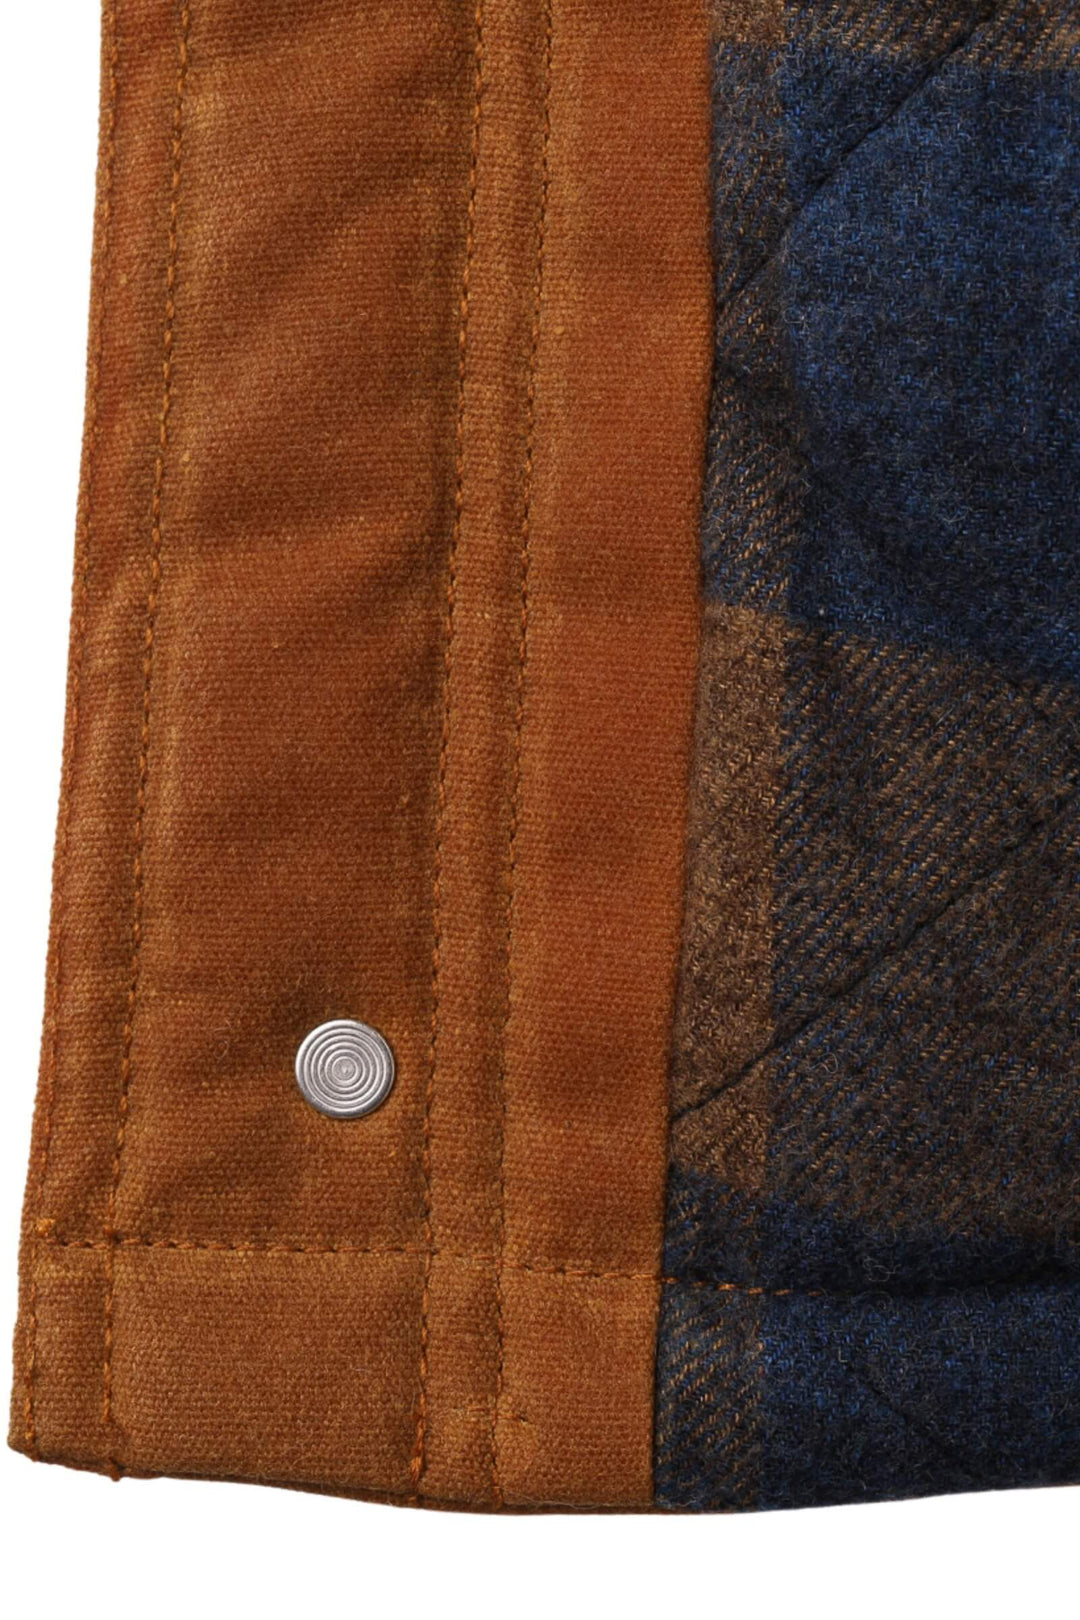 Ranch Hand Waxed Vest - inside pattern - Woodroad Gear Co.